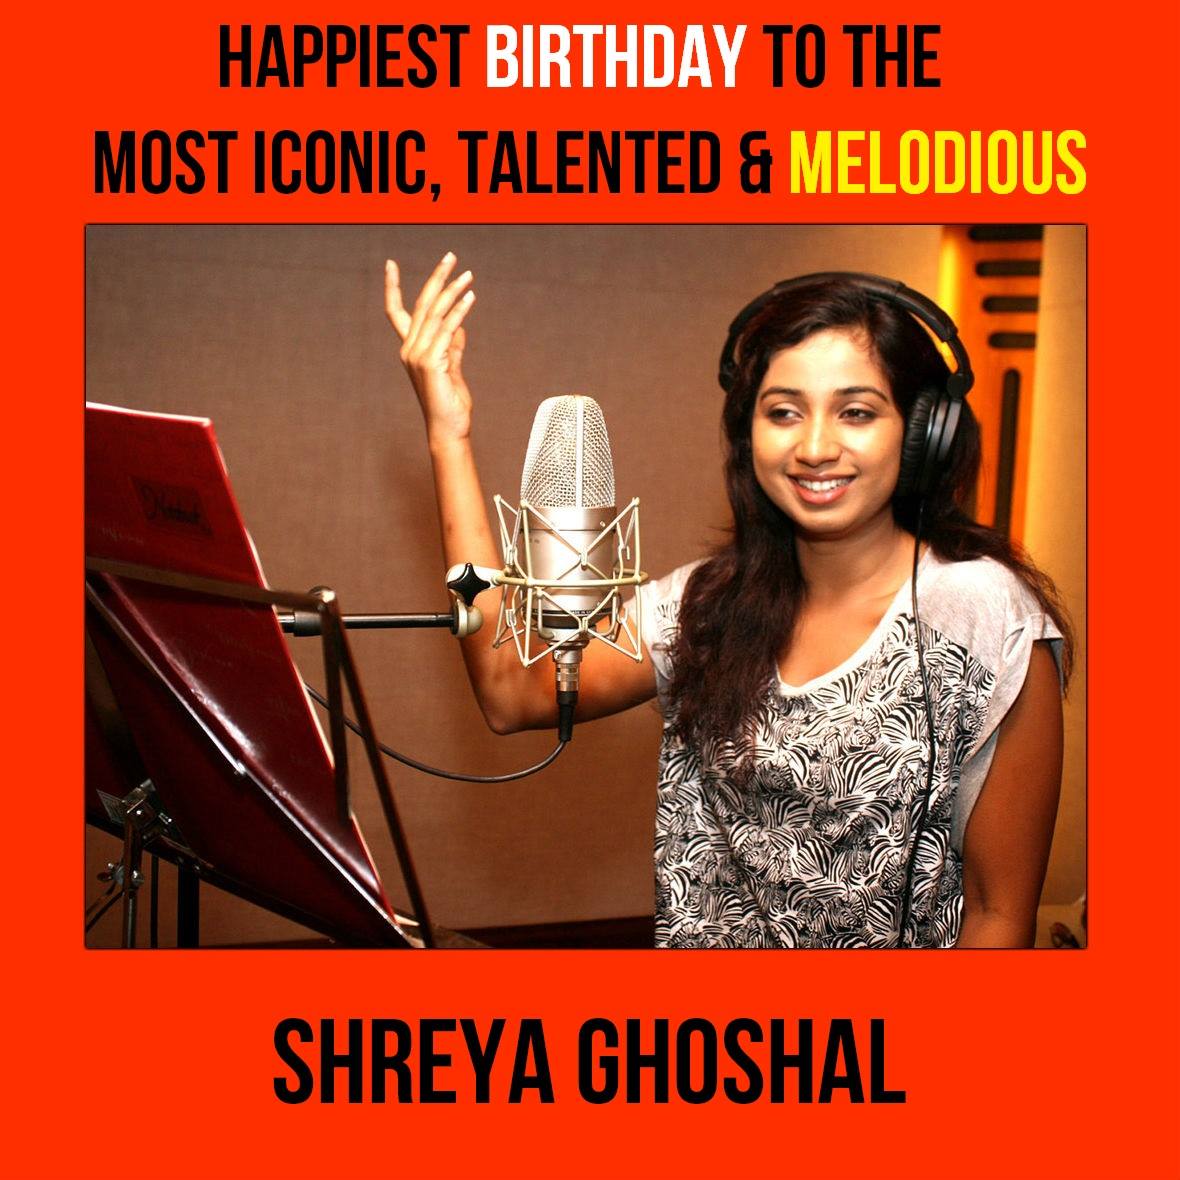 Happy birthday Shreya Ghoshal 